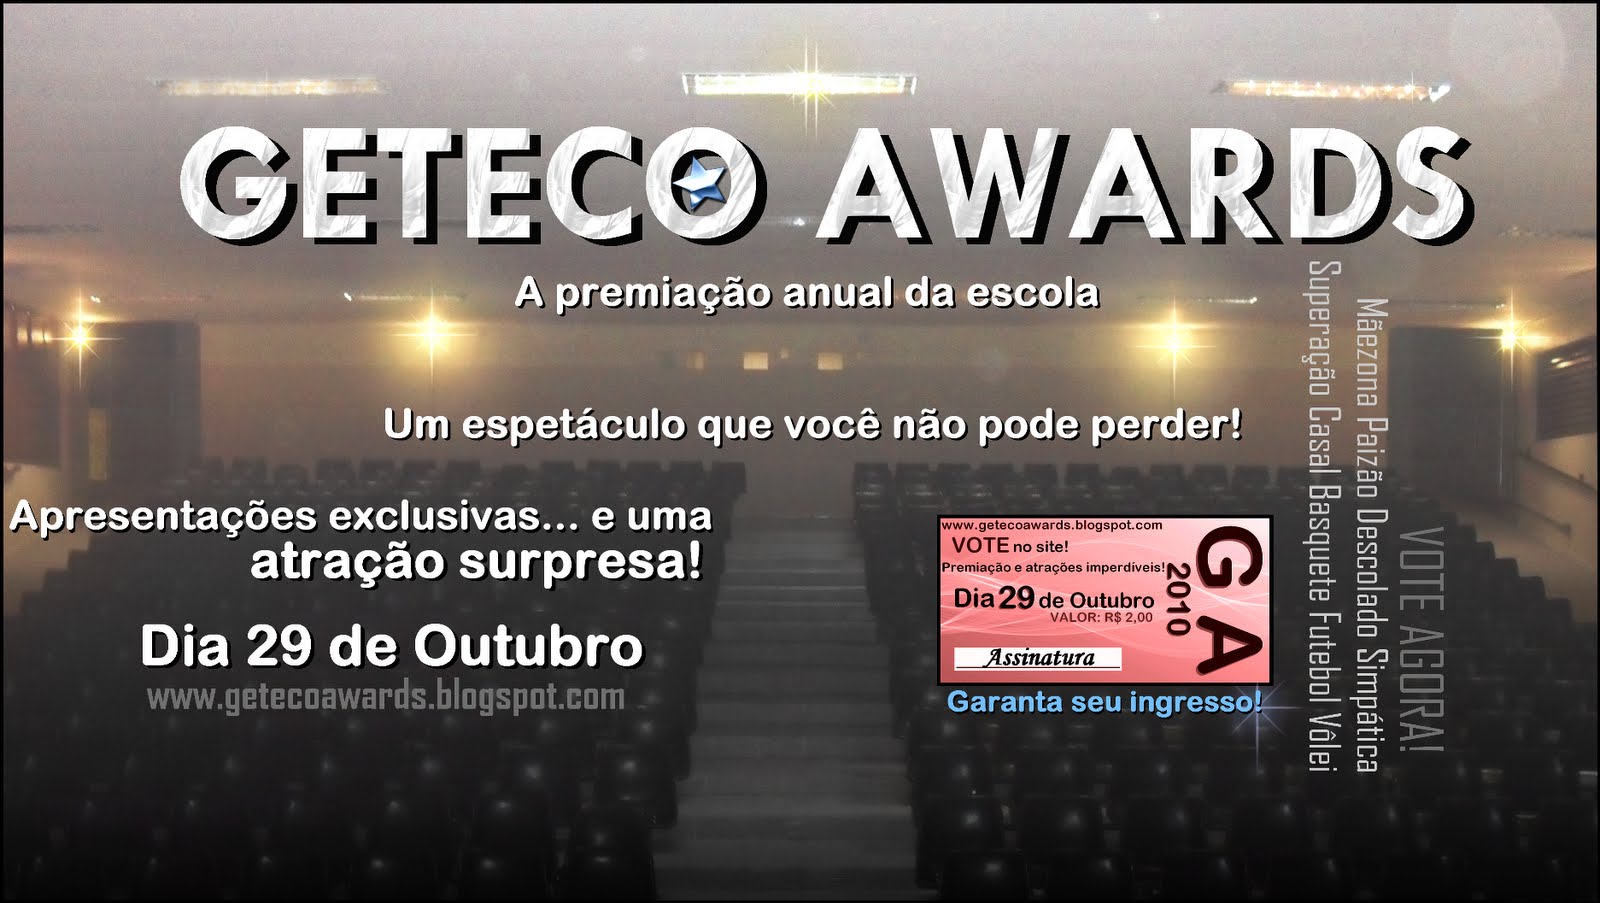 GETECO AWARDS 2010